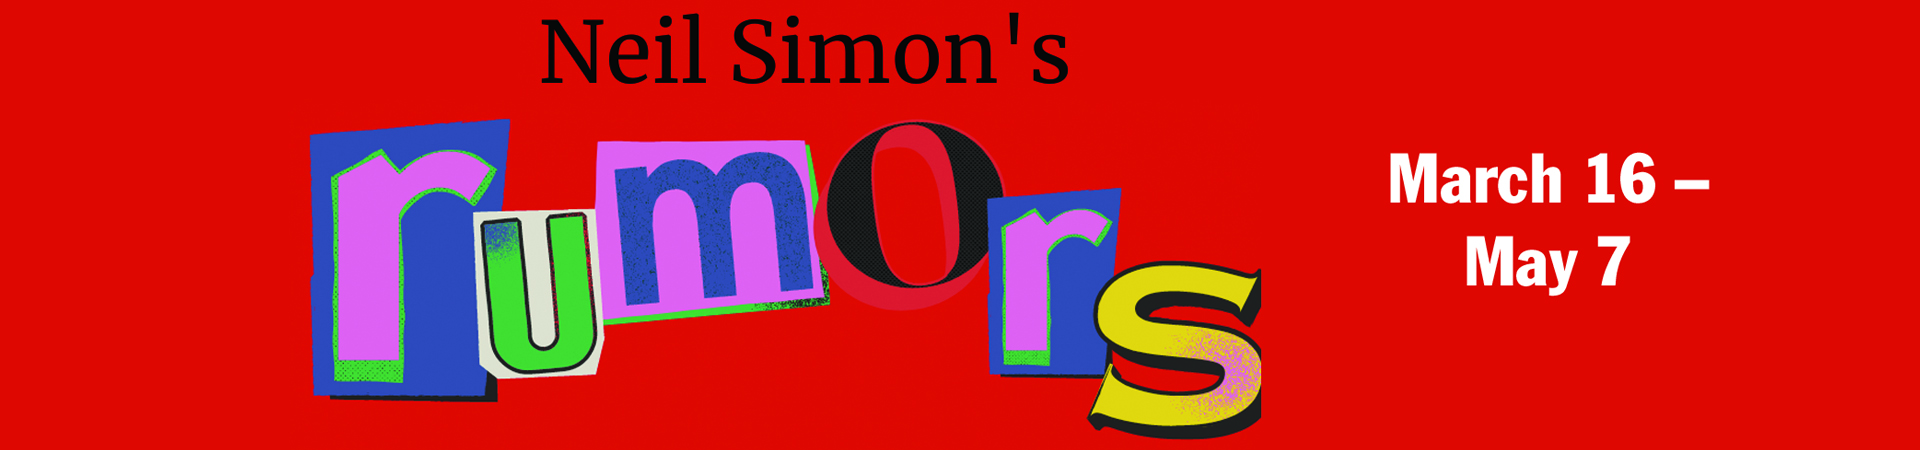 Logo for the Neil Simon comedy, Rumors